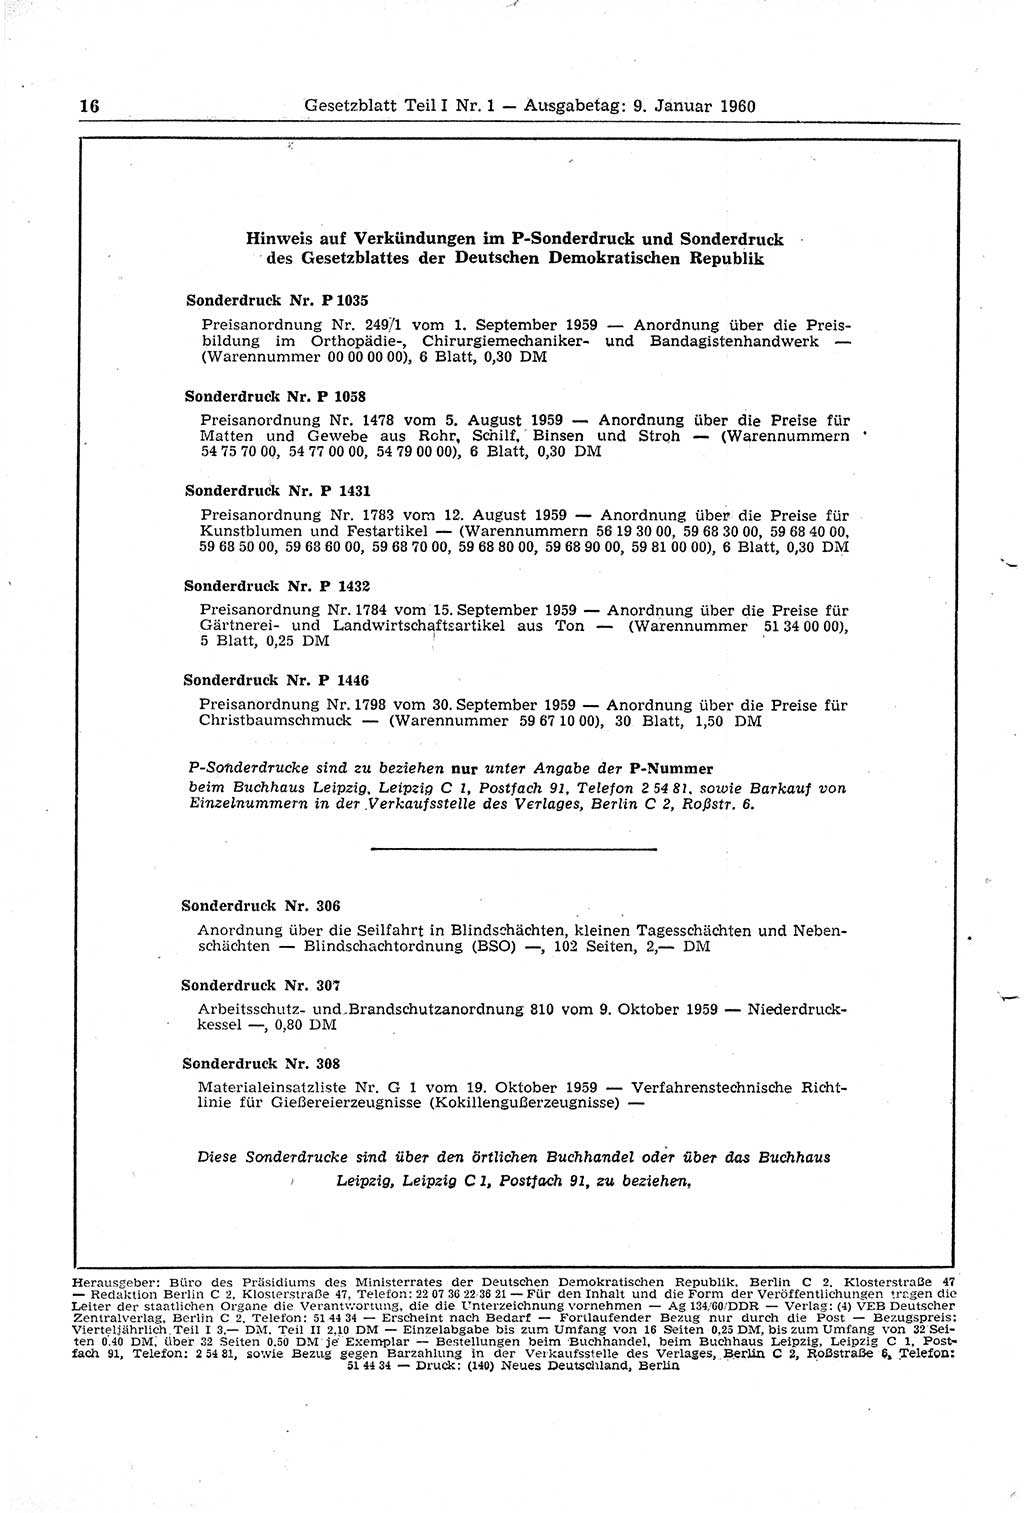 Gesetzblatt (GBl.) der Deutschen Demokratischen Republik (DDR) Teil Ⅰ 1960, Seite 16 (GBl. DDR Ⅰ 1960, S. 16)